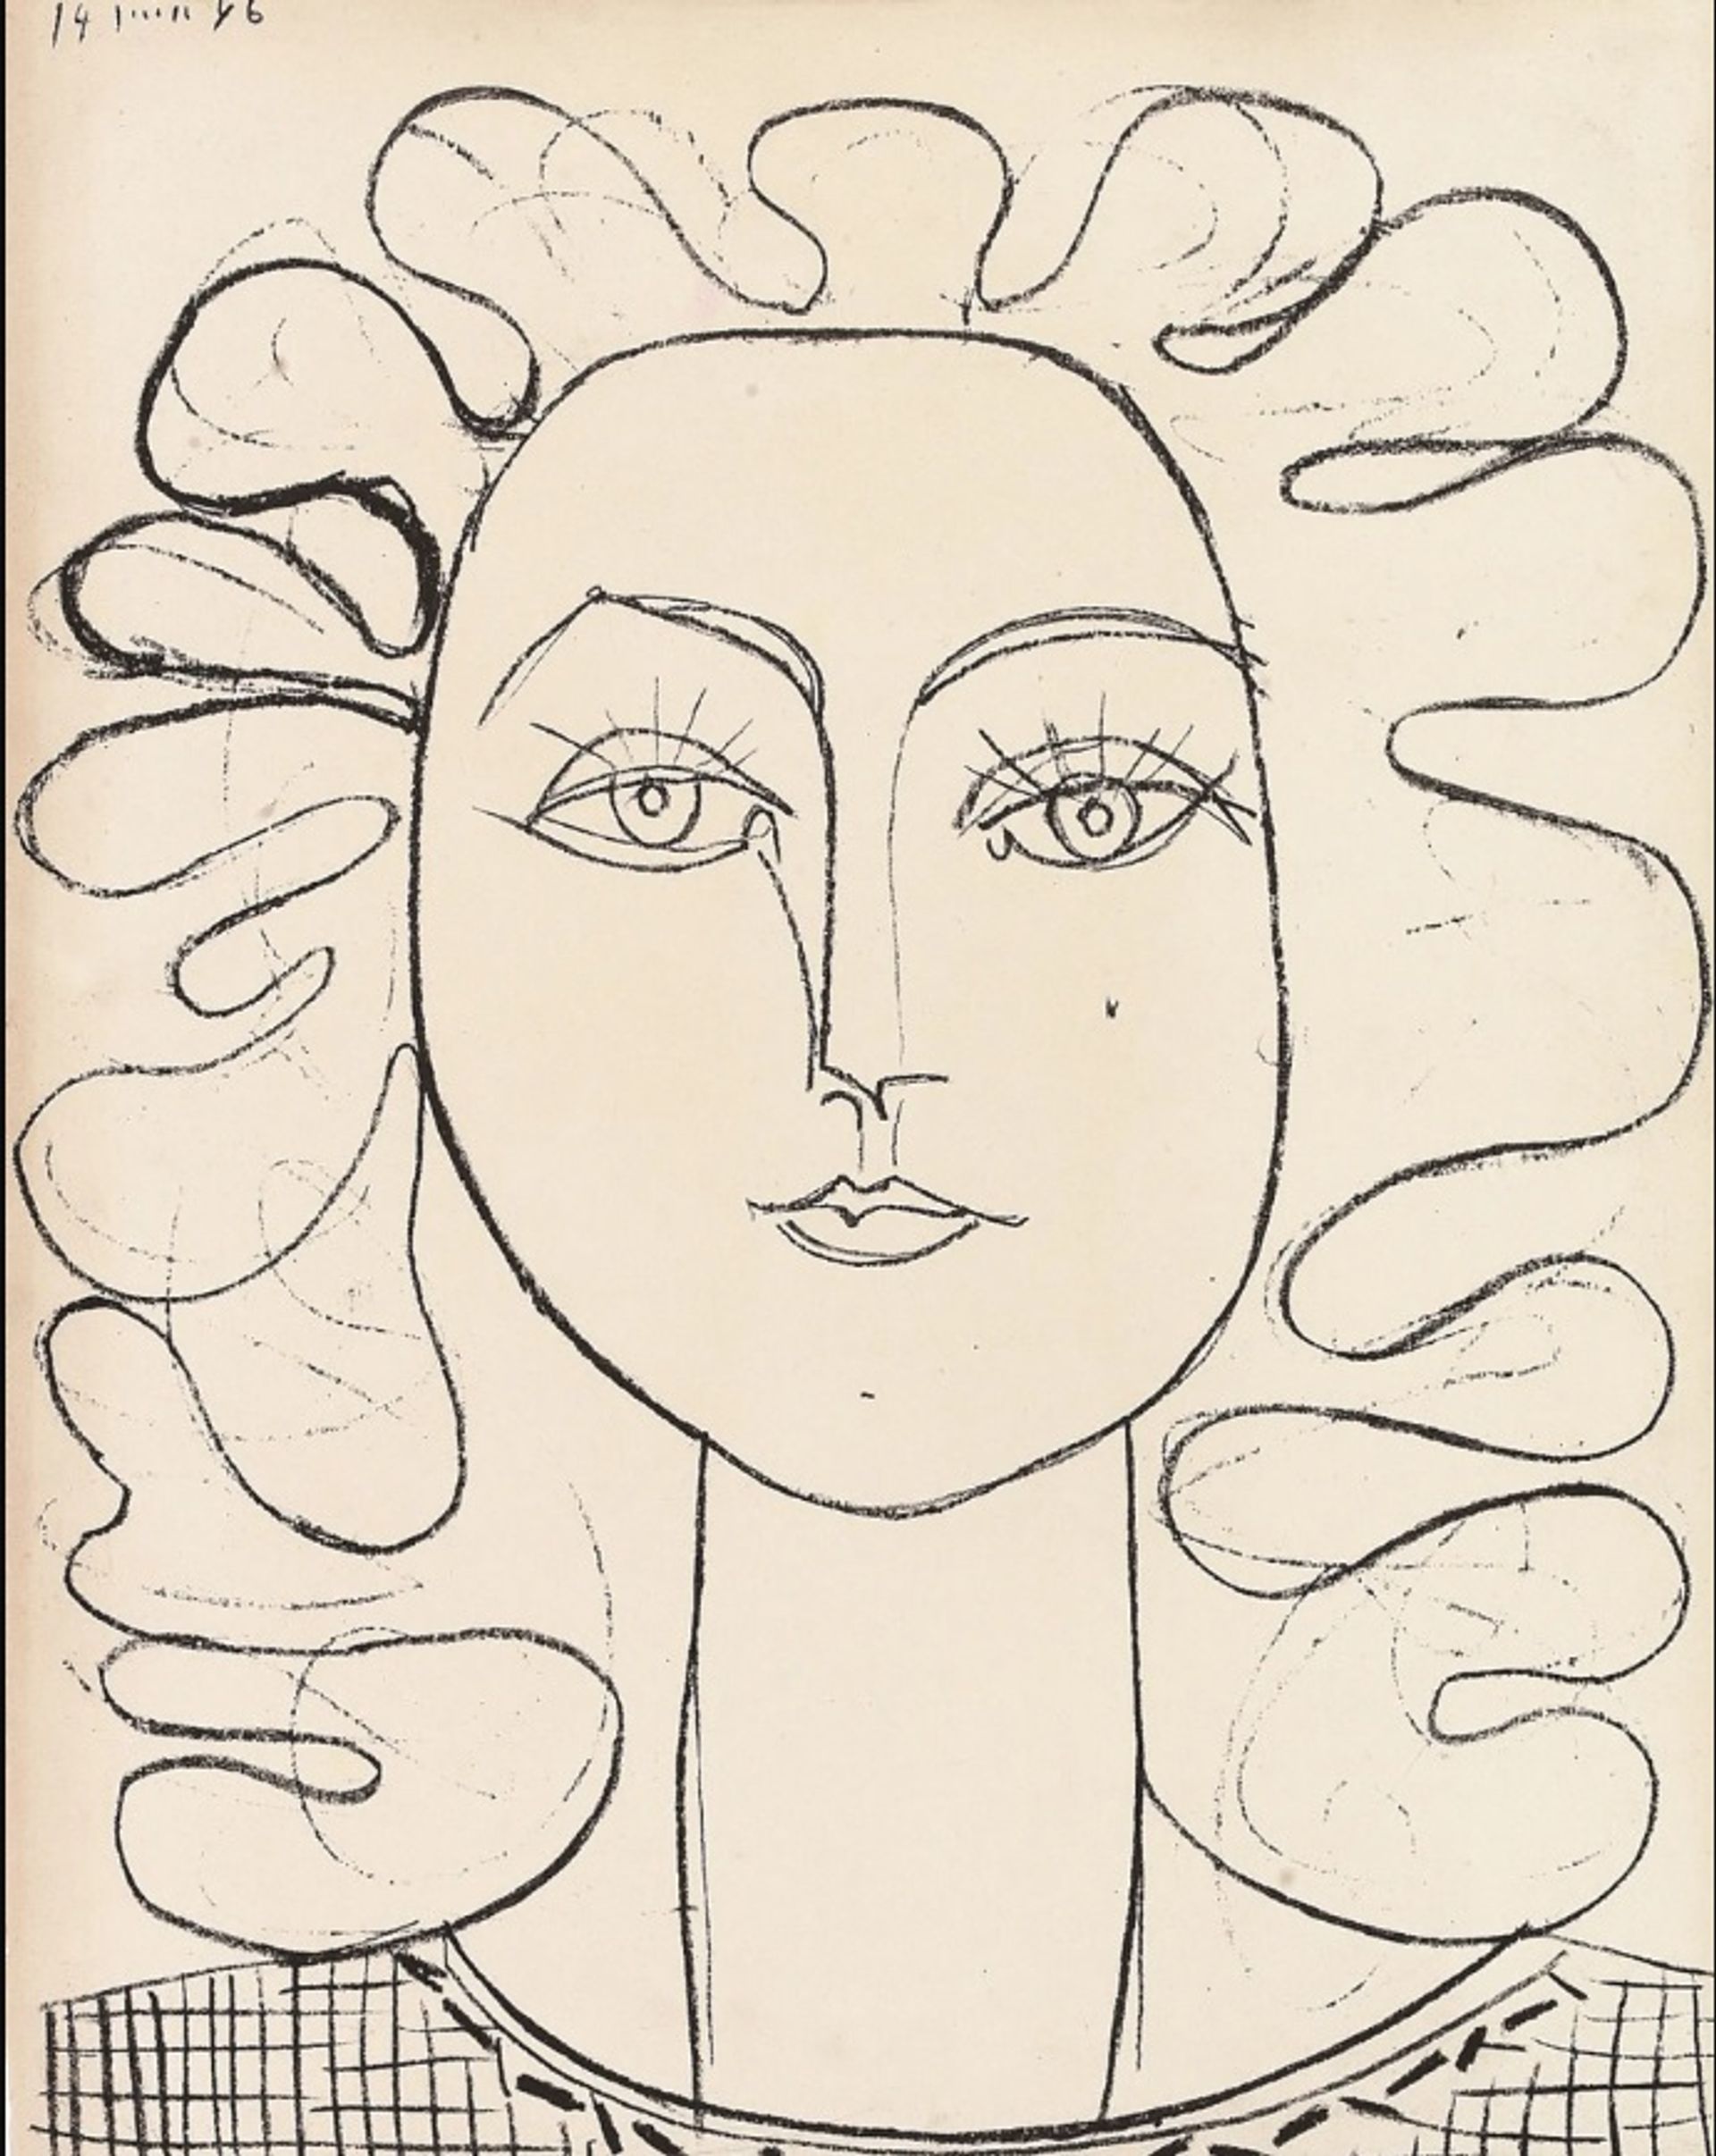 פרנסואז עם שיער גלי(1946) של פיקאסו

© Succession Pablo Picasso, VG Bild-Kunst, Bonn